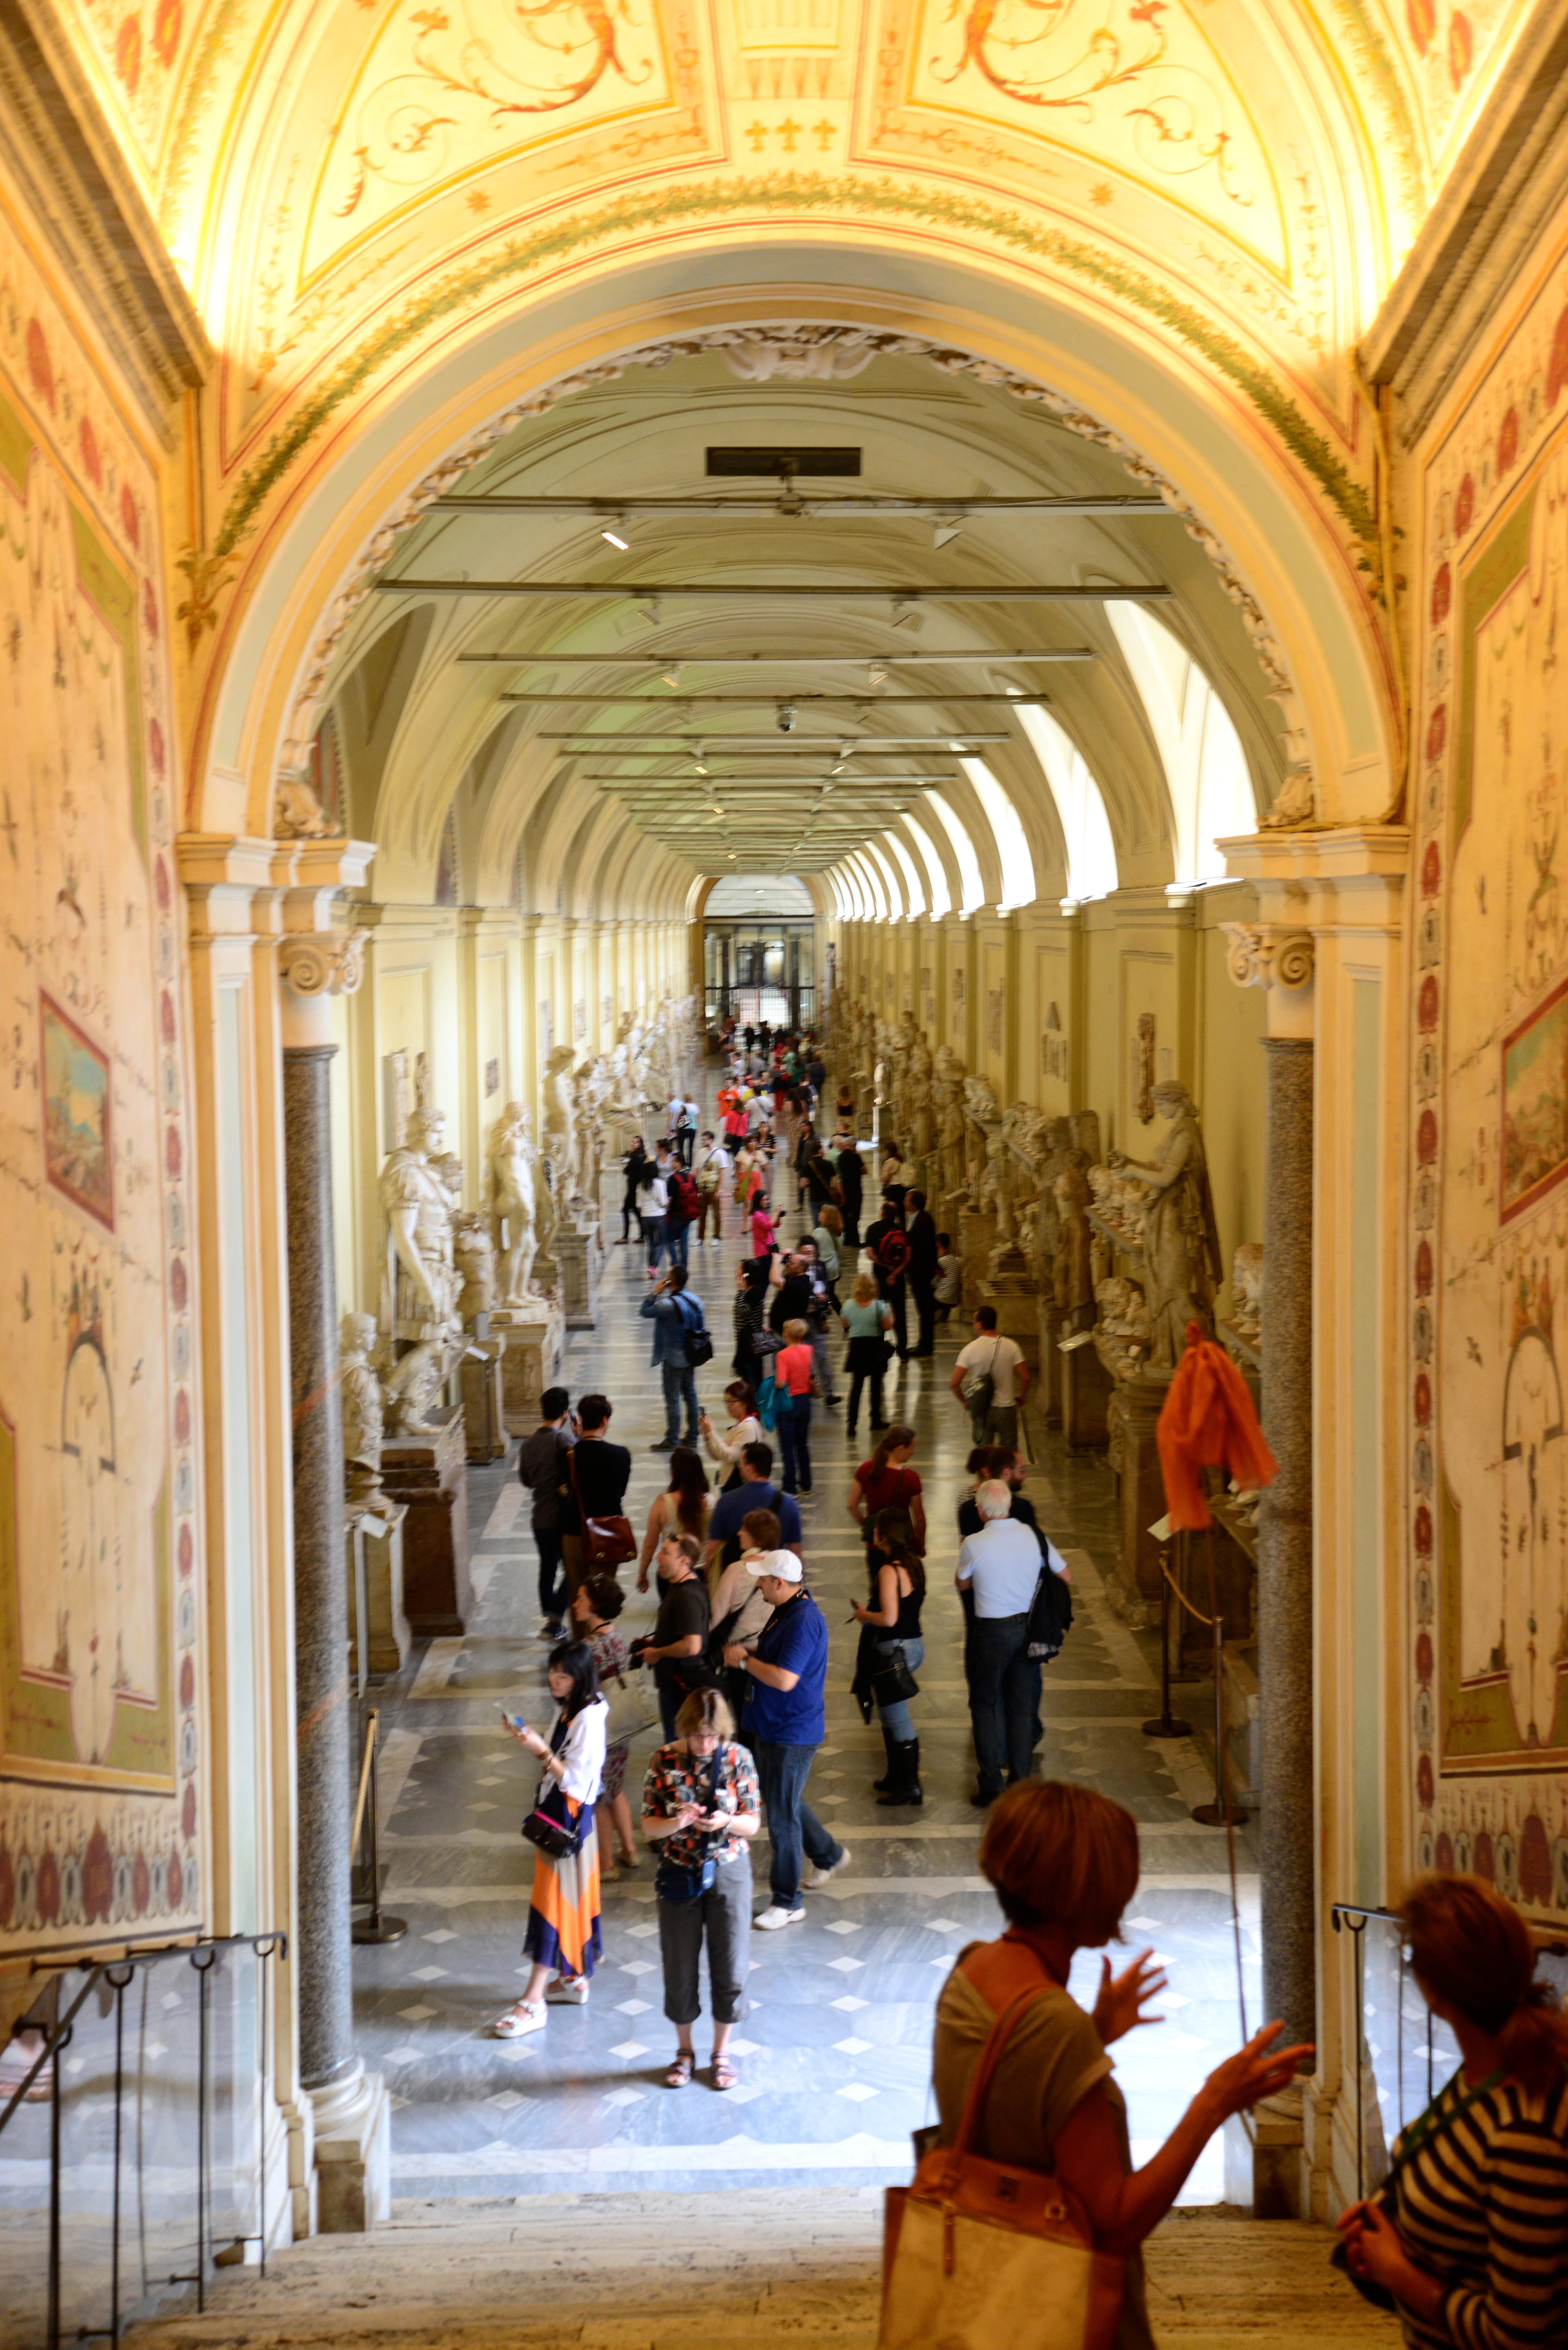 Os Museus possuem extensos corredores.